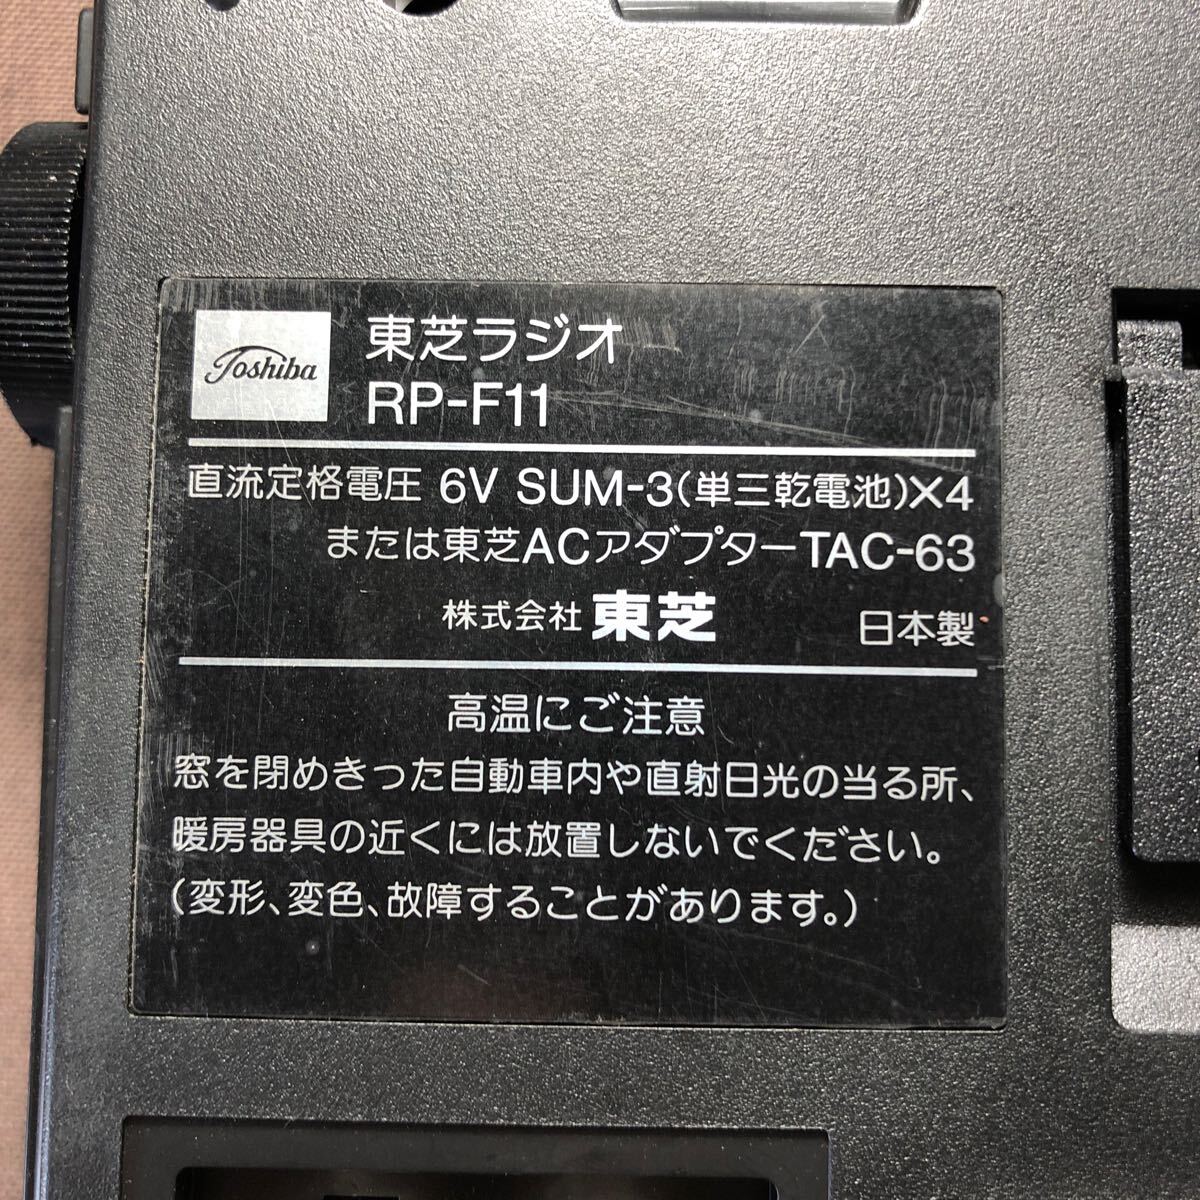 BA140 Showa Retro подлинная вещь Toshiba TOSHIBA RP-F11 короткие волны радио FM/MW/9-SW 11BAND 11 частота ресивер радио 